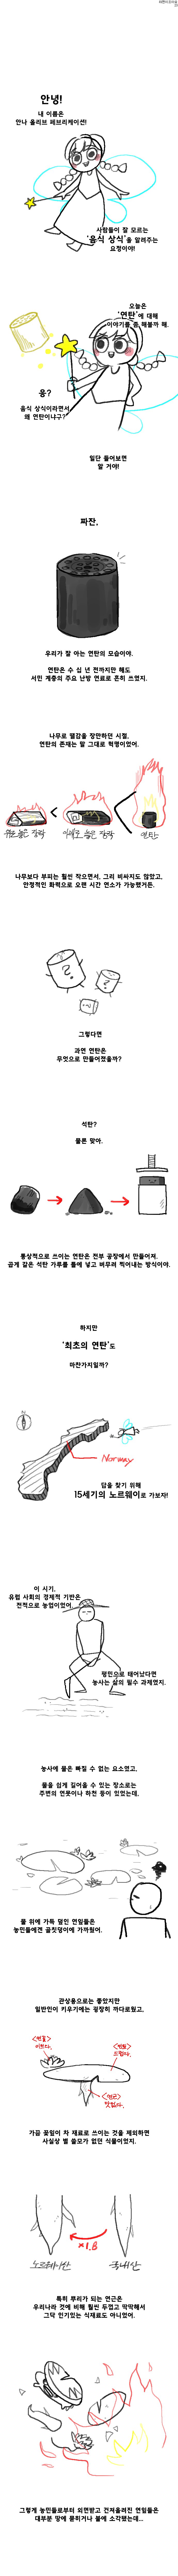 대한민국 9퍼센트가 모르는 연근의 관한 허실.manhwa